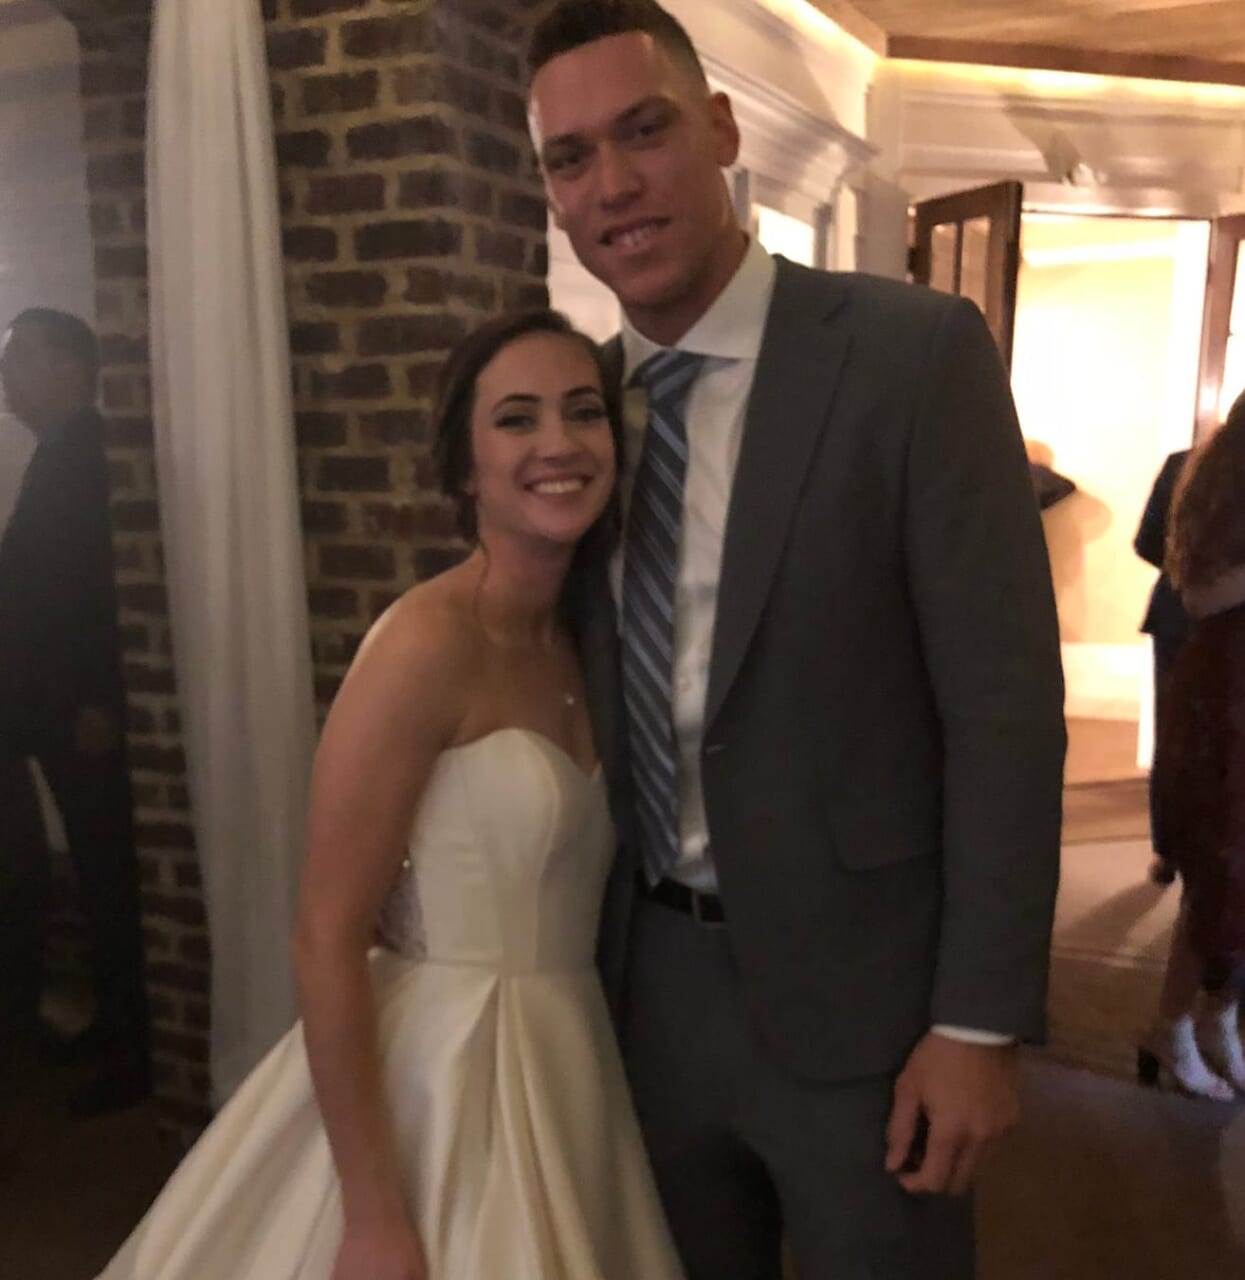 Is Aaron Judge Married? New York Yankees Star's Wife Is Samantha Bracksieck